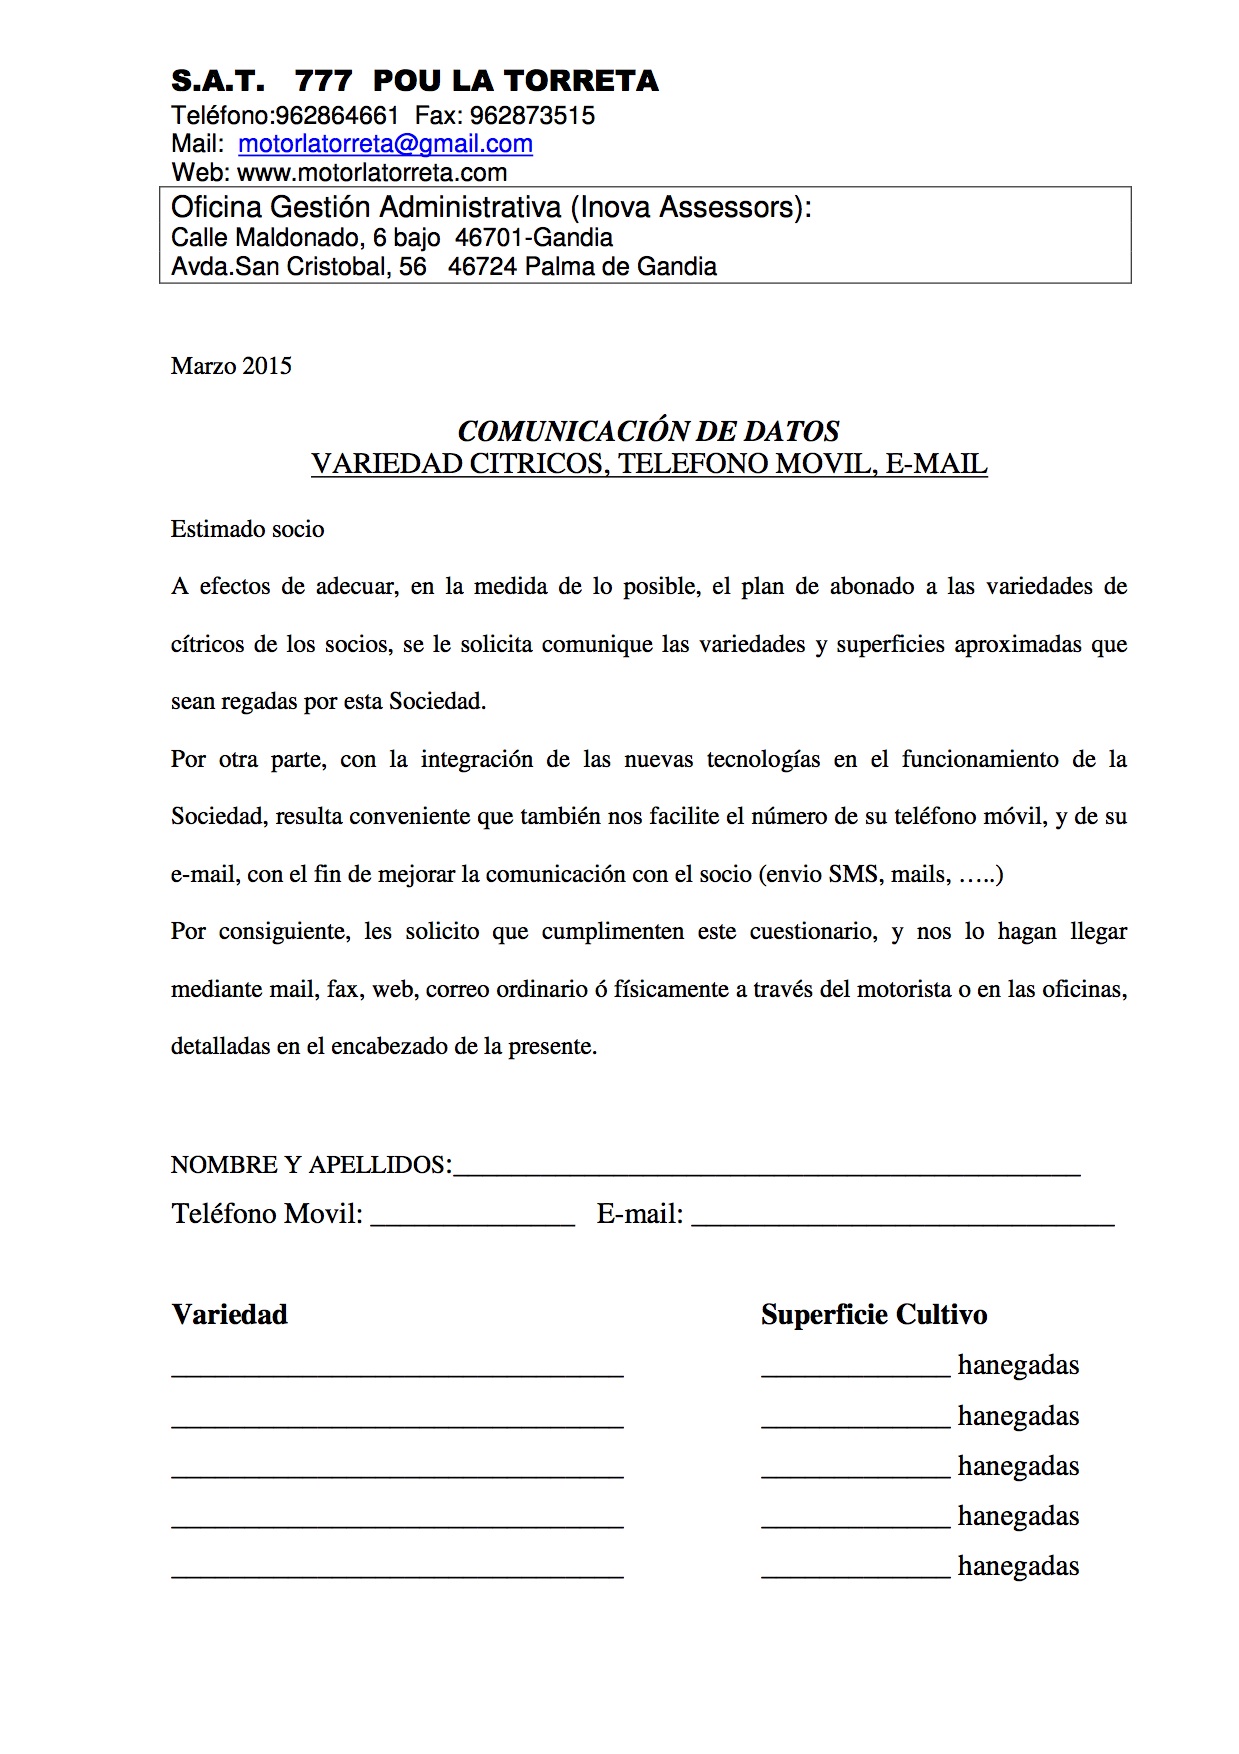 formulario COMUNICACION VARIEDADES, MAIL Y MOVIL SOCIOS TORRETA MARZO 2015